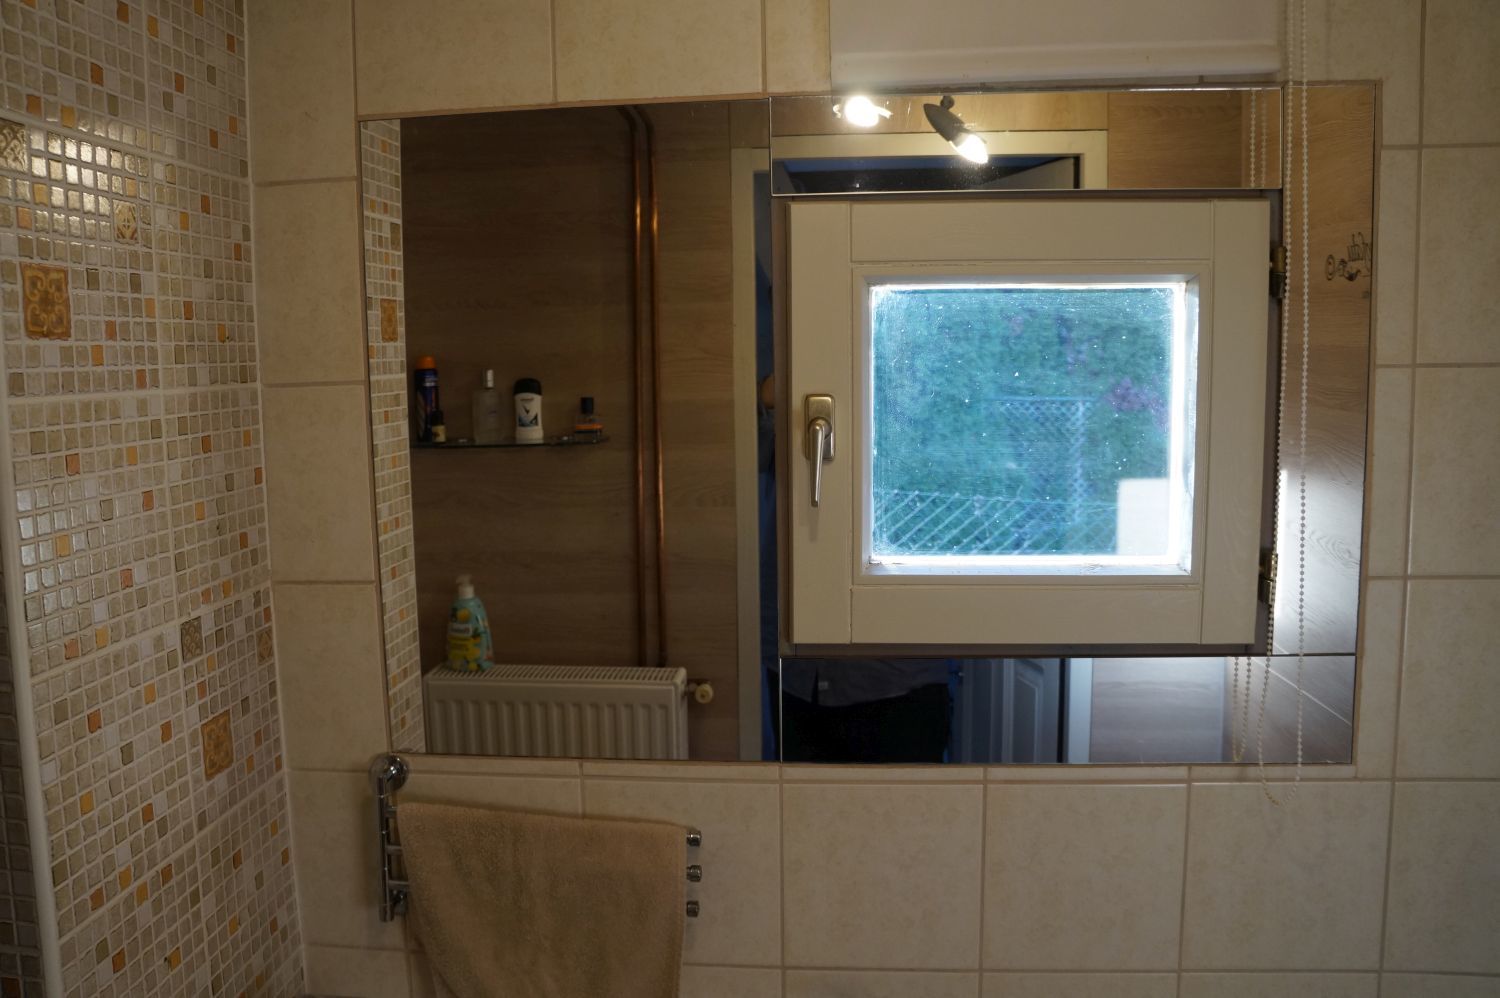 A fürdőszoba ablak köré ragasztott tükör